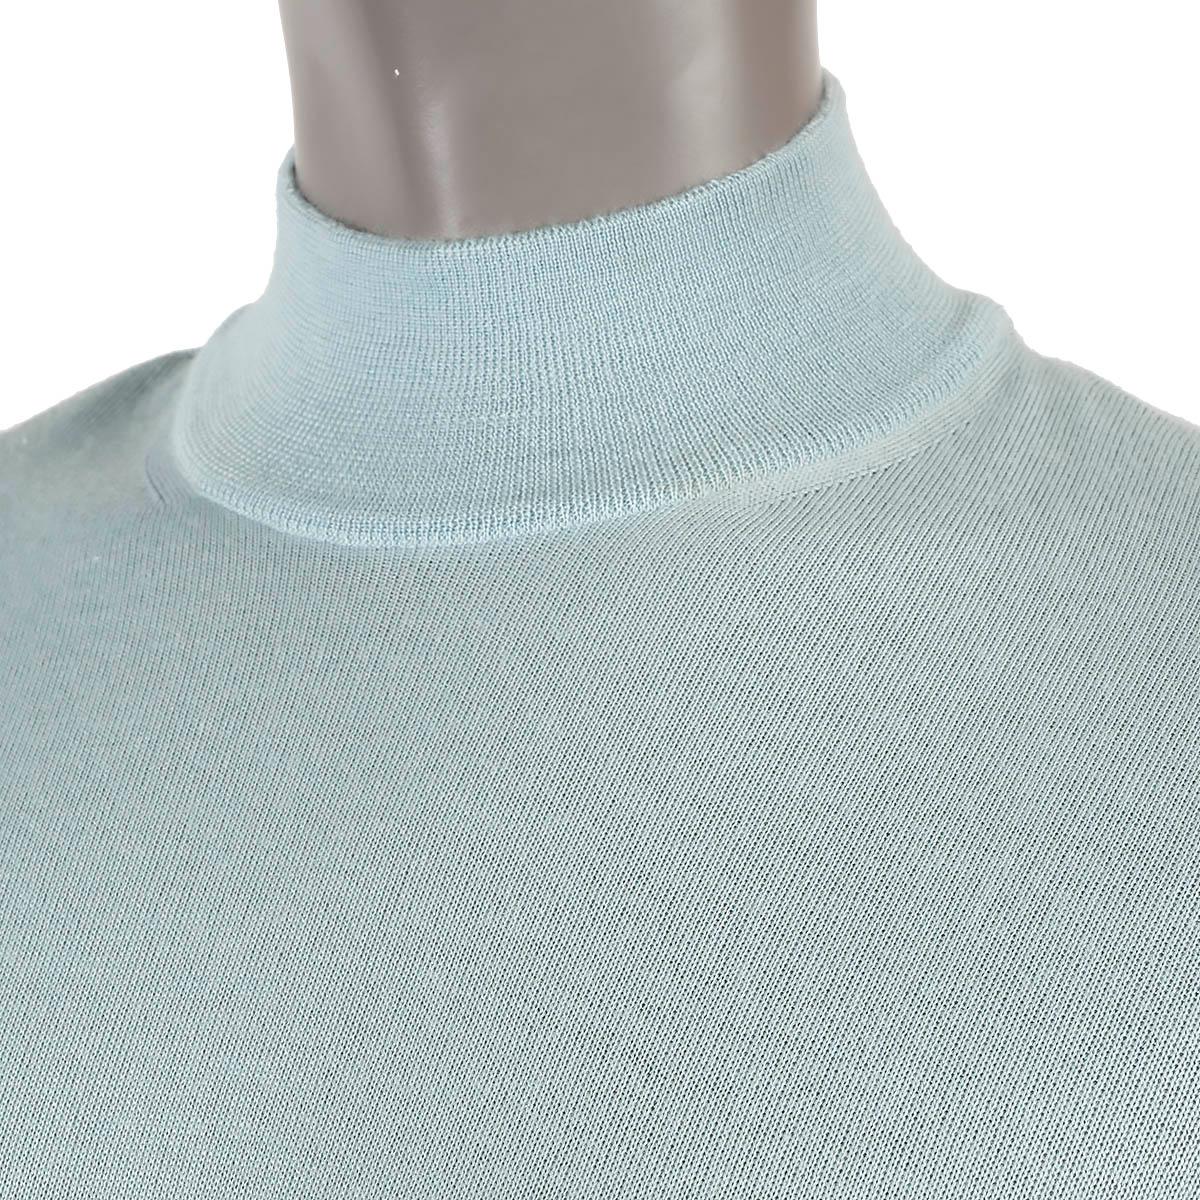 GIORGIO ARMANI aqua blue cashmere silk MOCK NECK Sweater 40 S For Sale 1